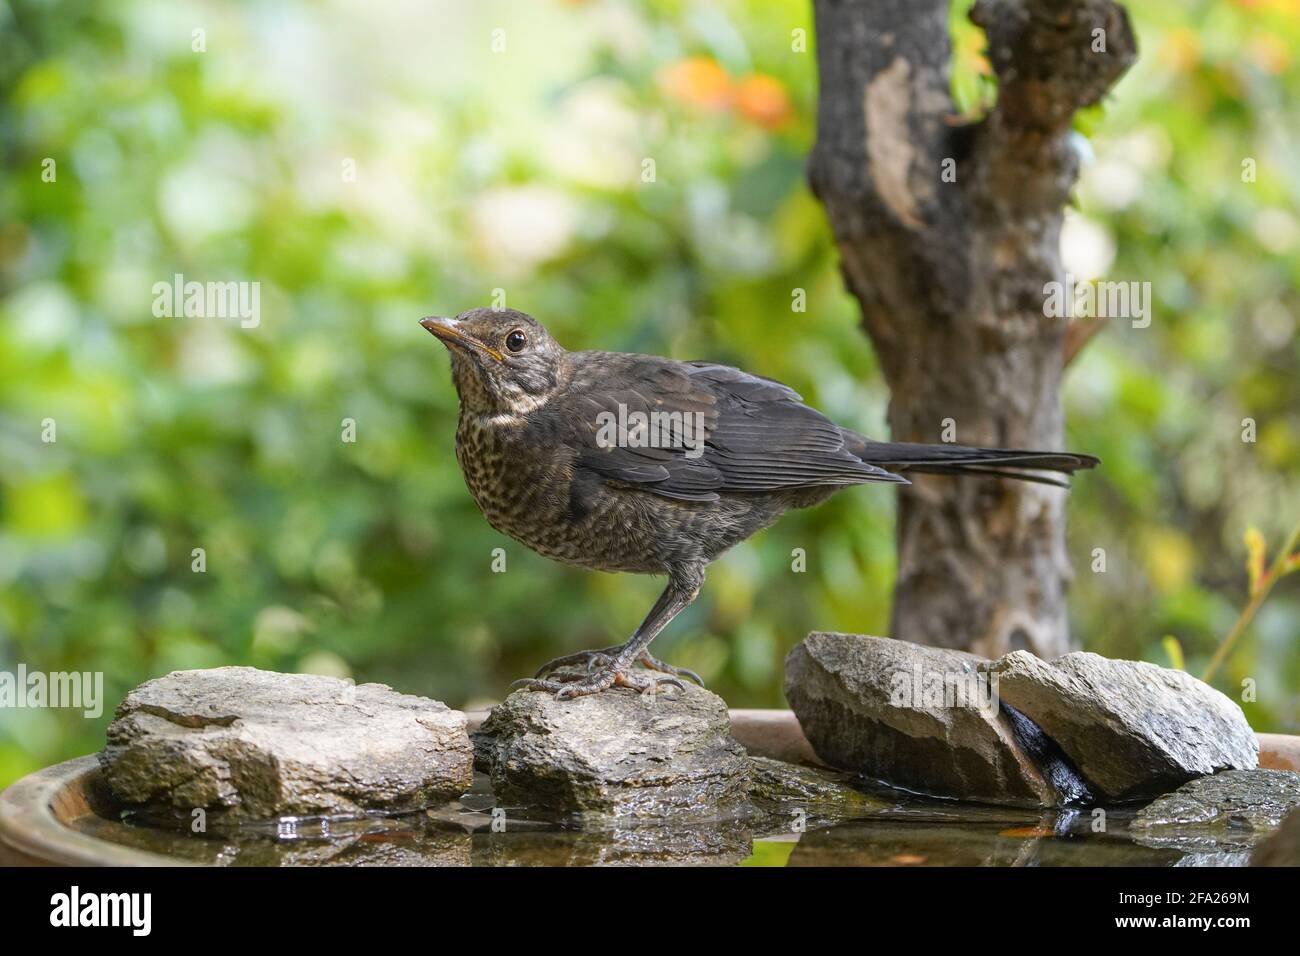 Jeune blackbird (Turdus merula), va boire dans un jardin. Espagne. Banque D'Images